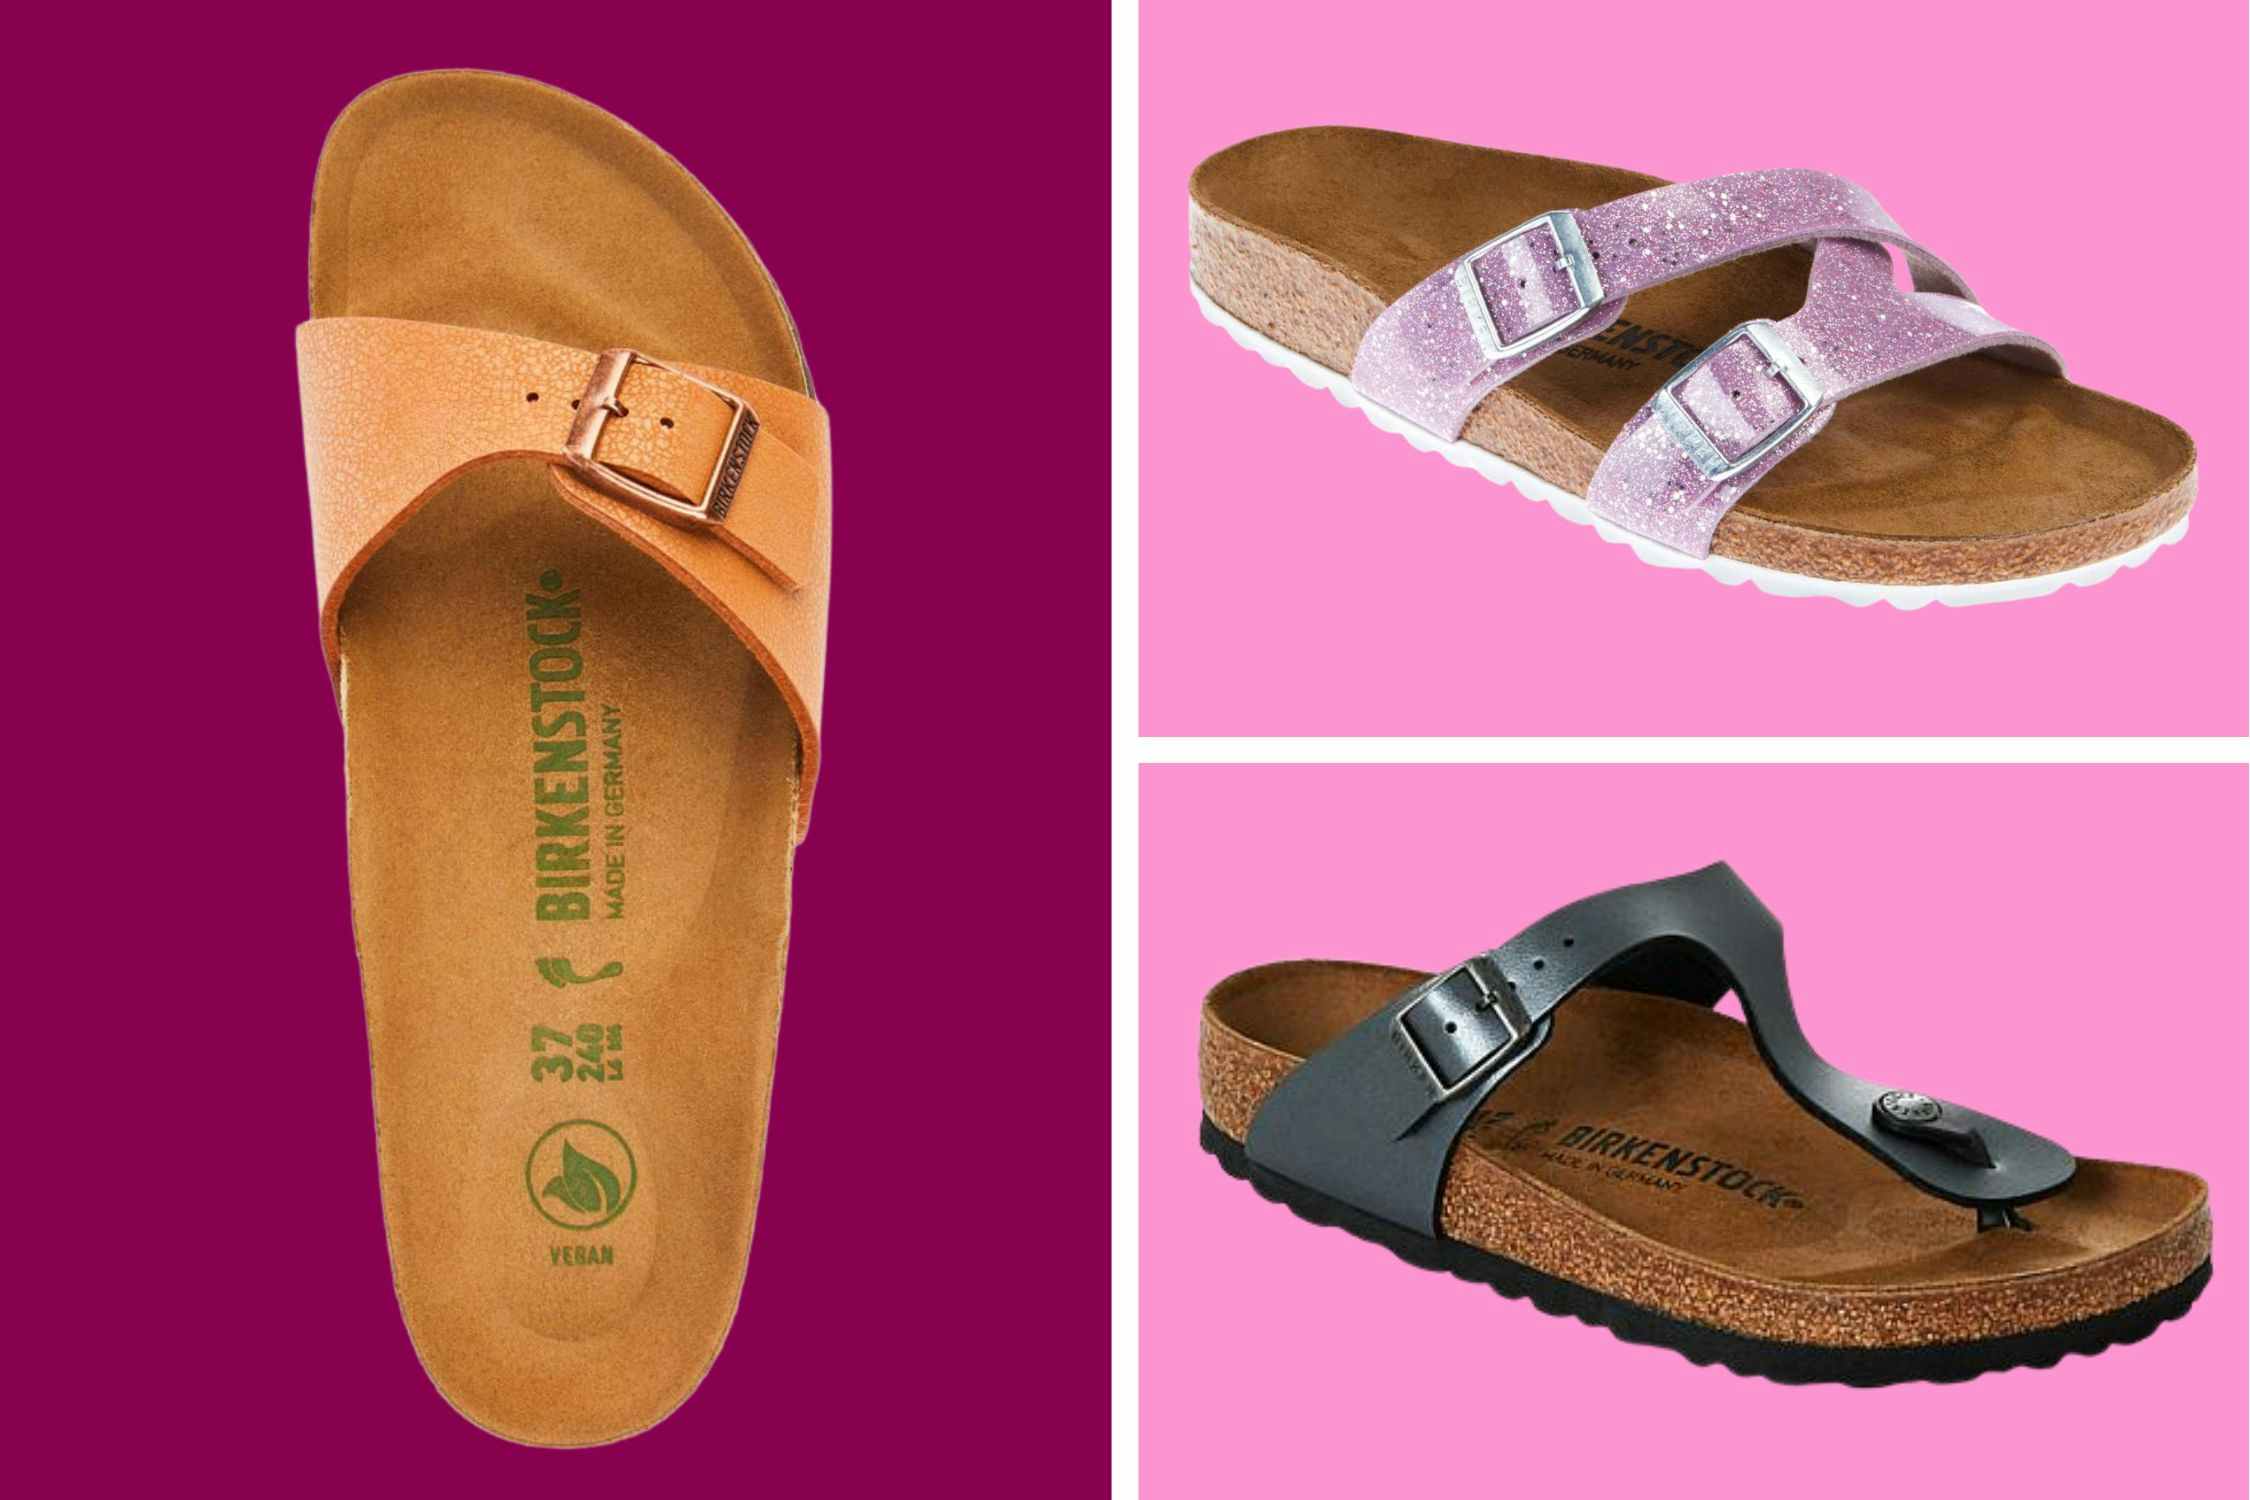 Birkenstock Deals at HSN: Sandals Start at $60 Shipped (Reg. $90+)